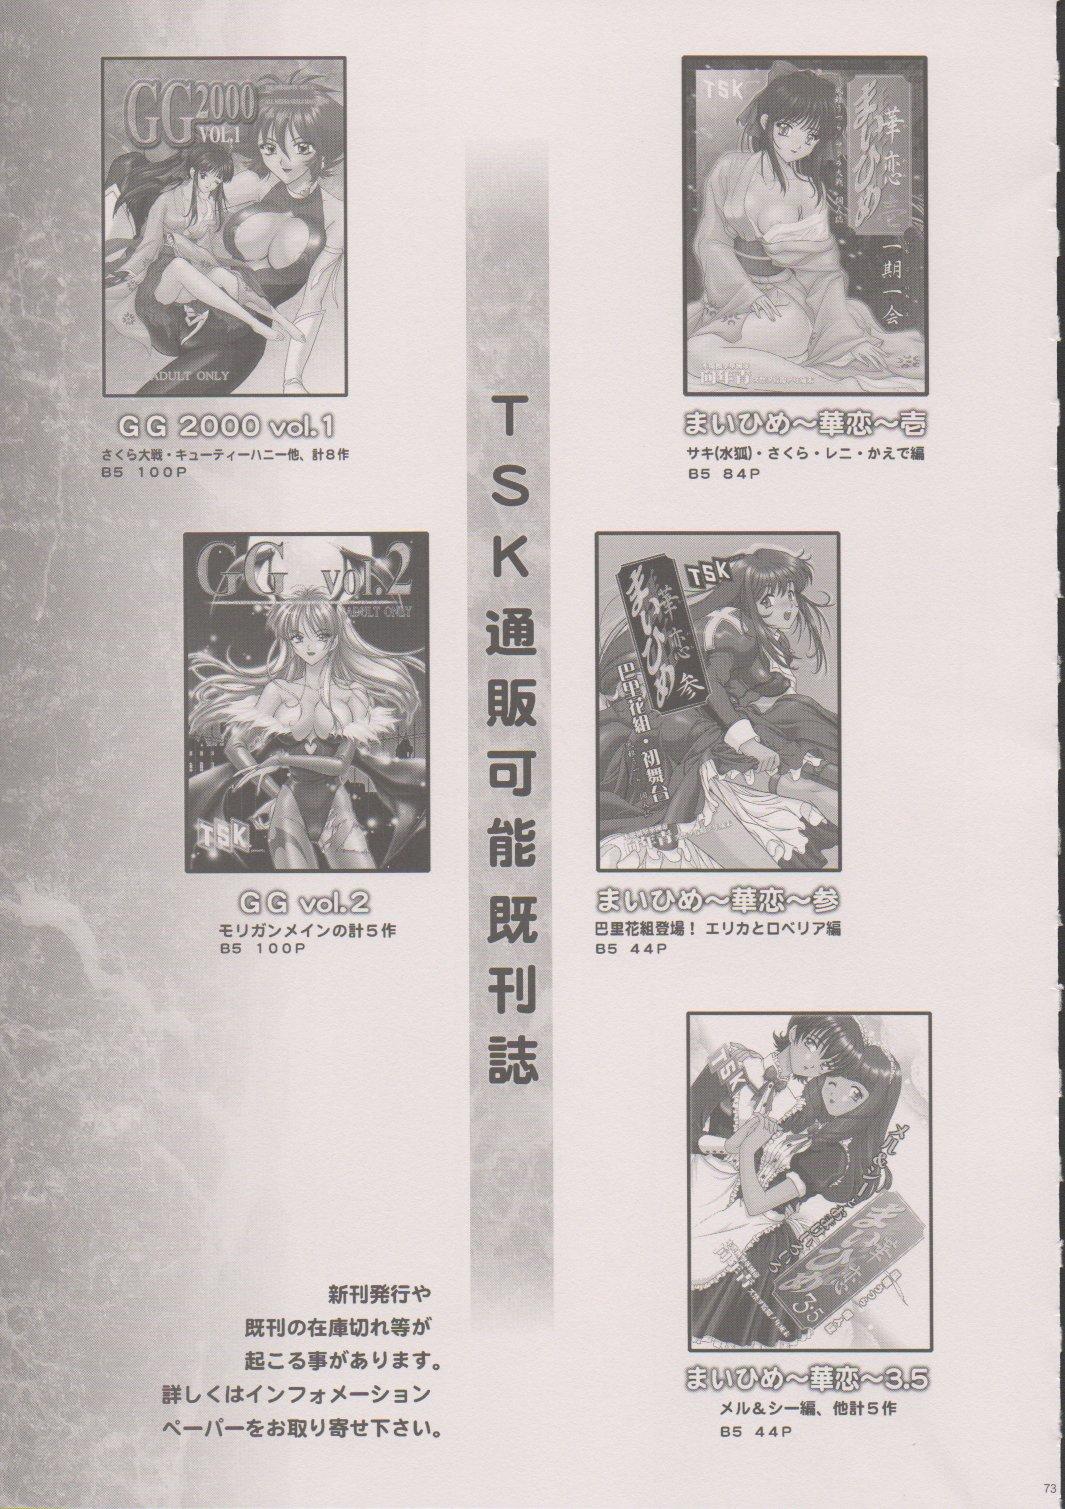 [TSK (Fuuga Utsura)] Maihime ~Karen~ 6 Teito Yori. (Sakura Wars) 71